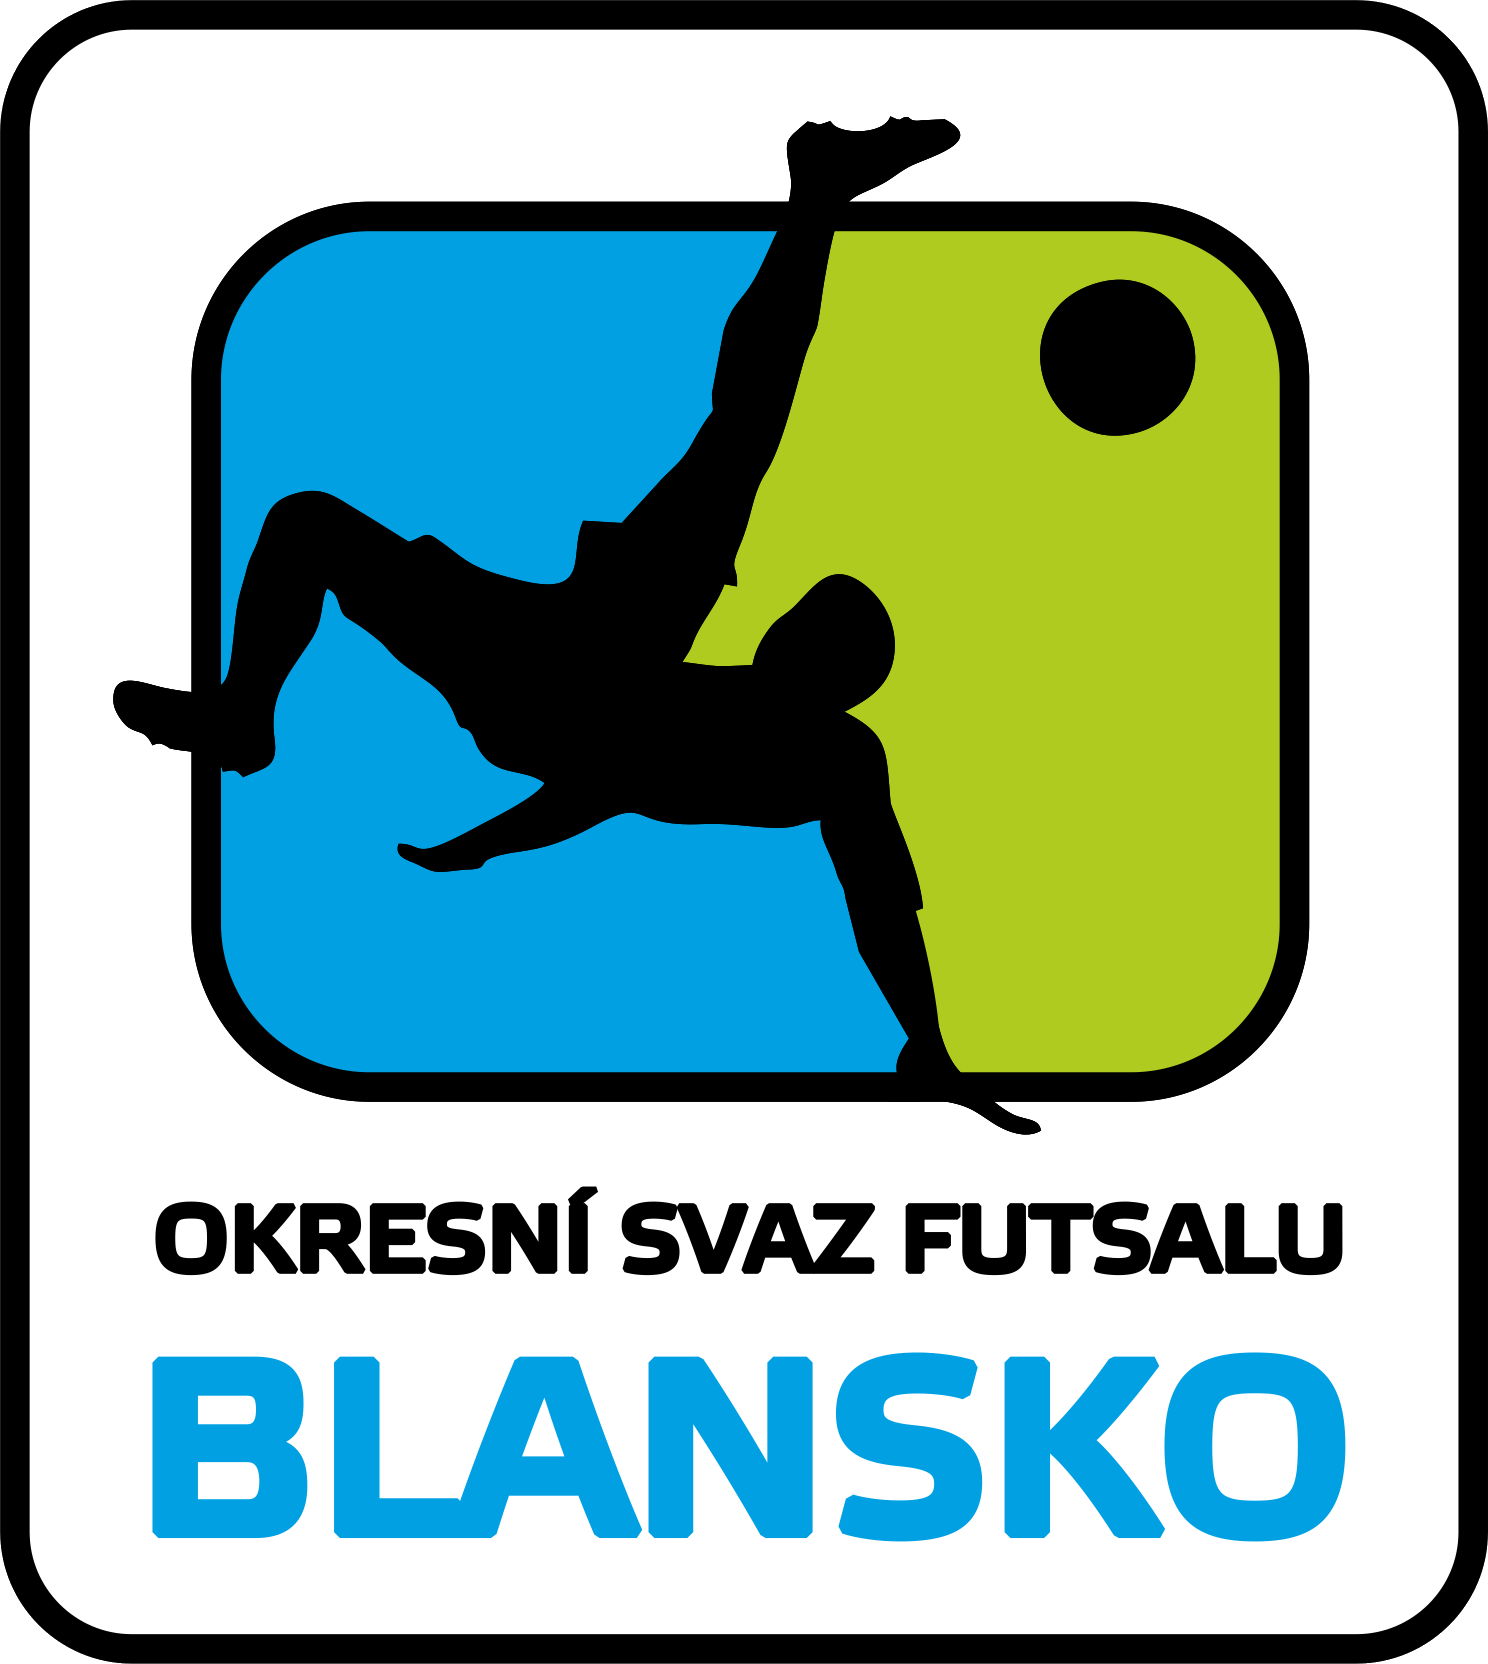 Okresní svaz futsalu Blansko